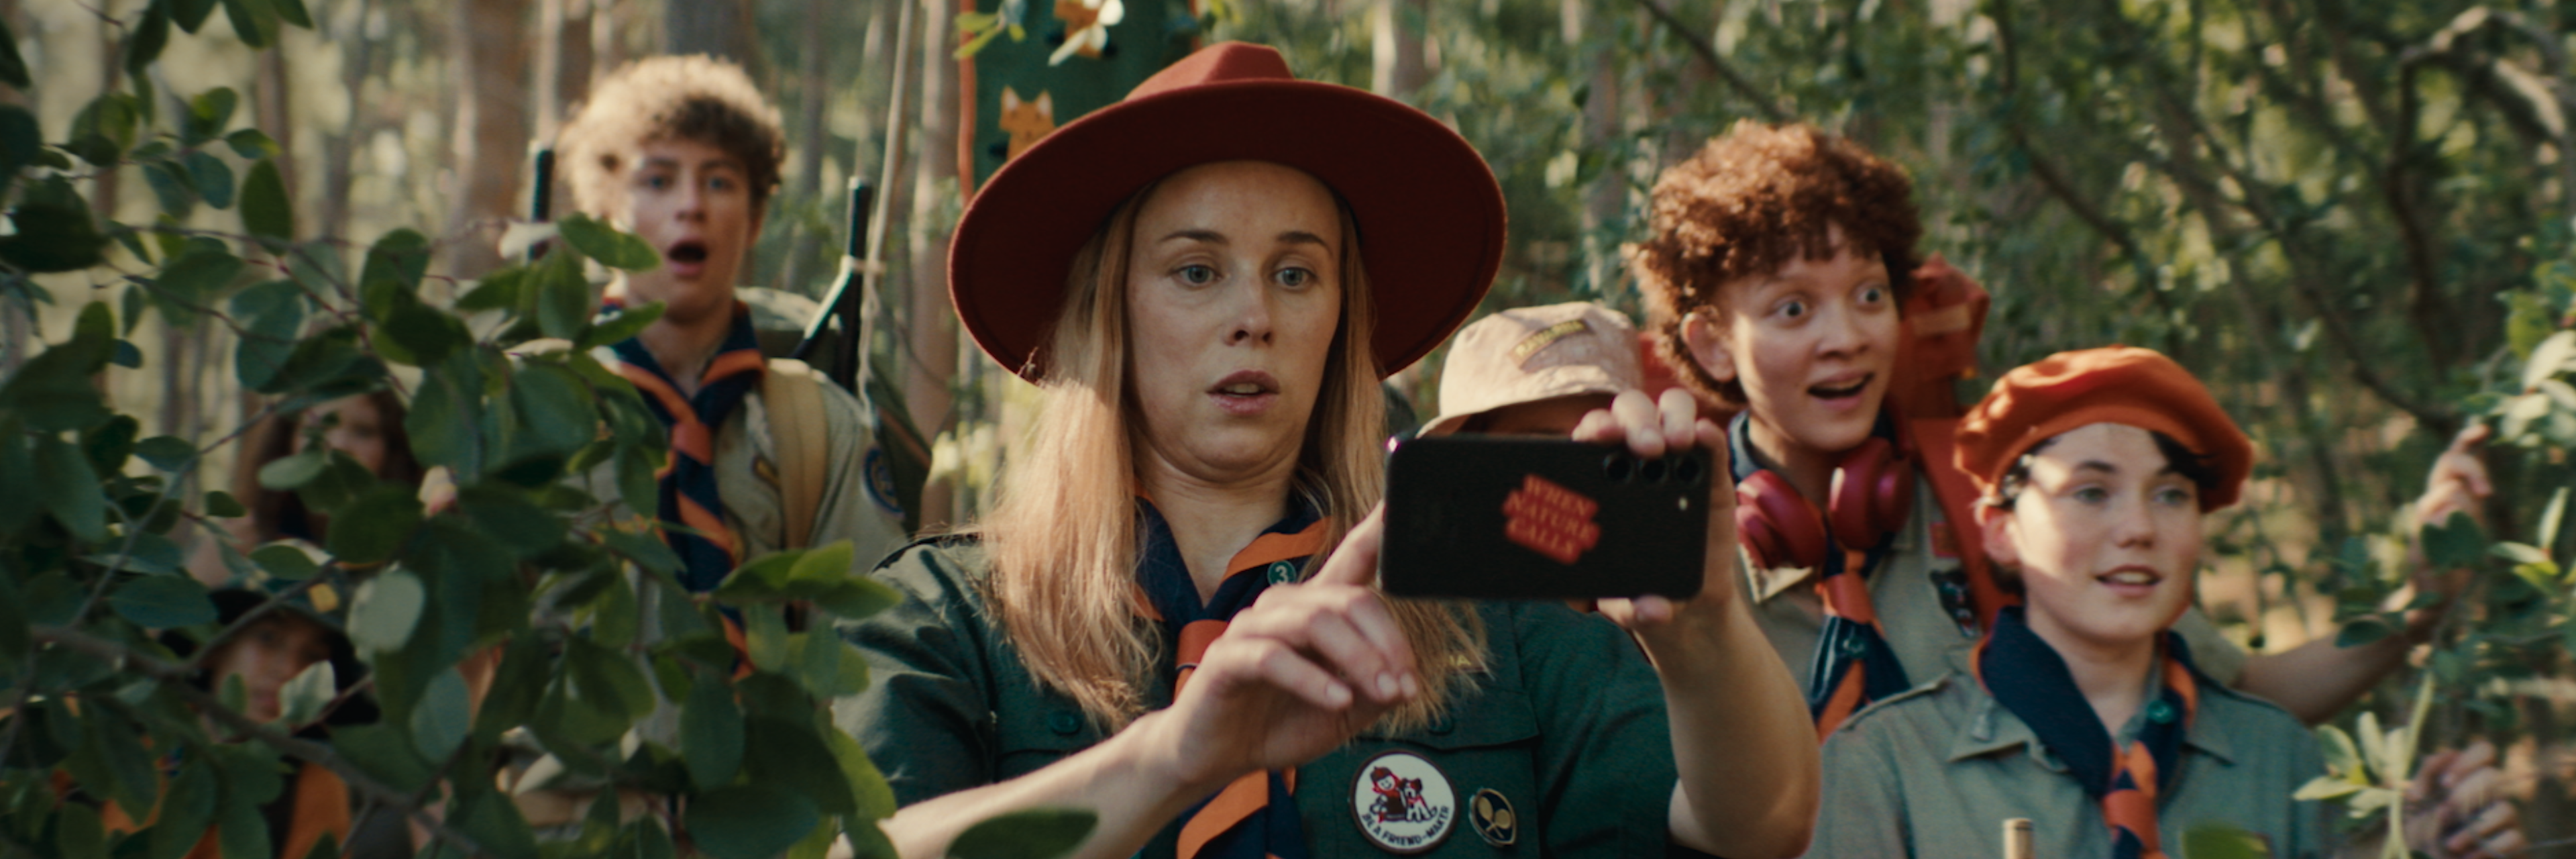 En scout står i skogen tillsammans med andra scouter och fotograferar med en svart mobil.